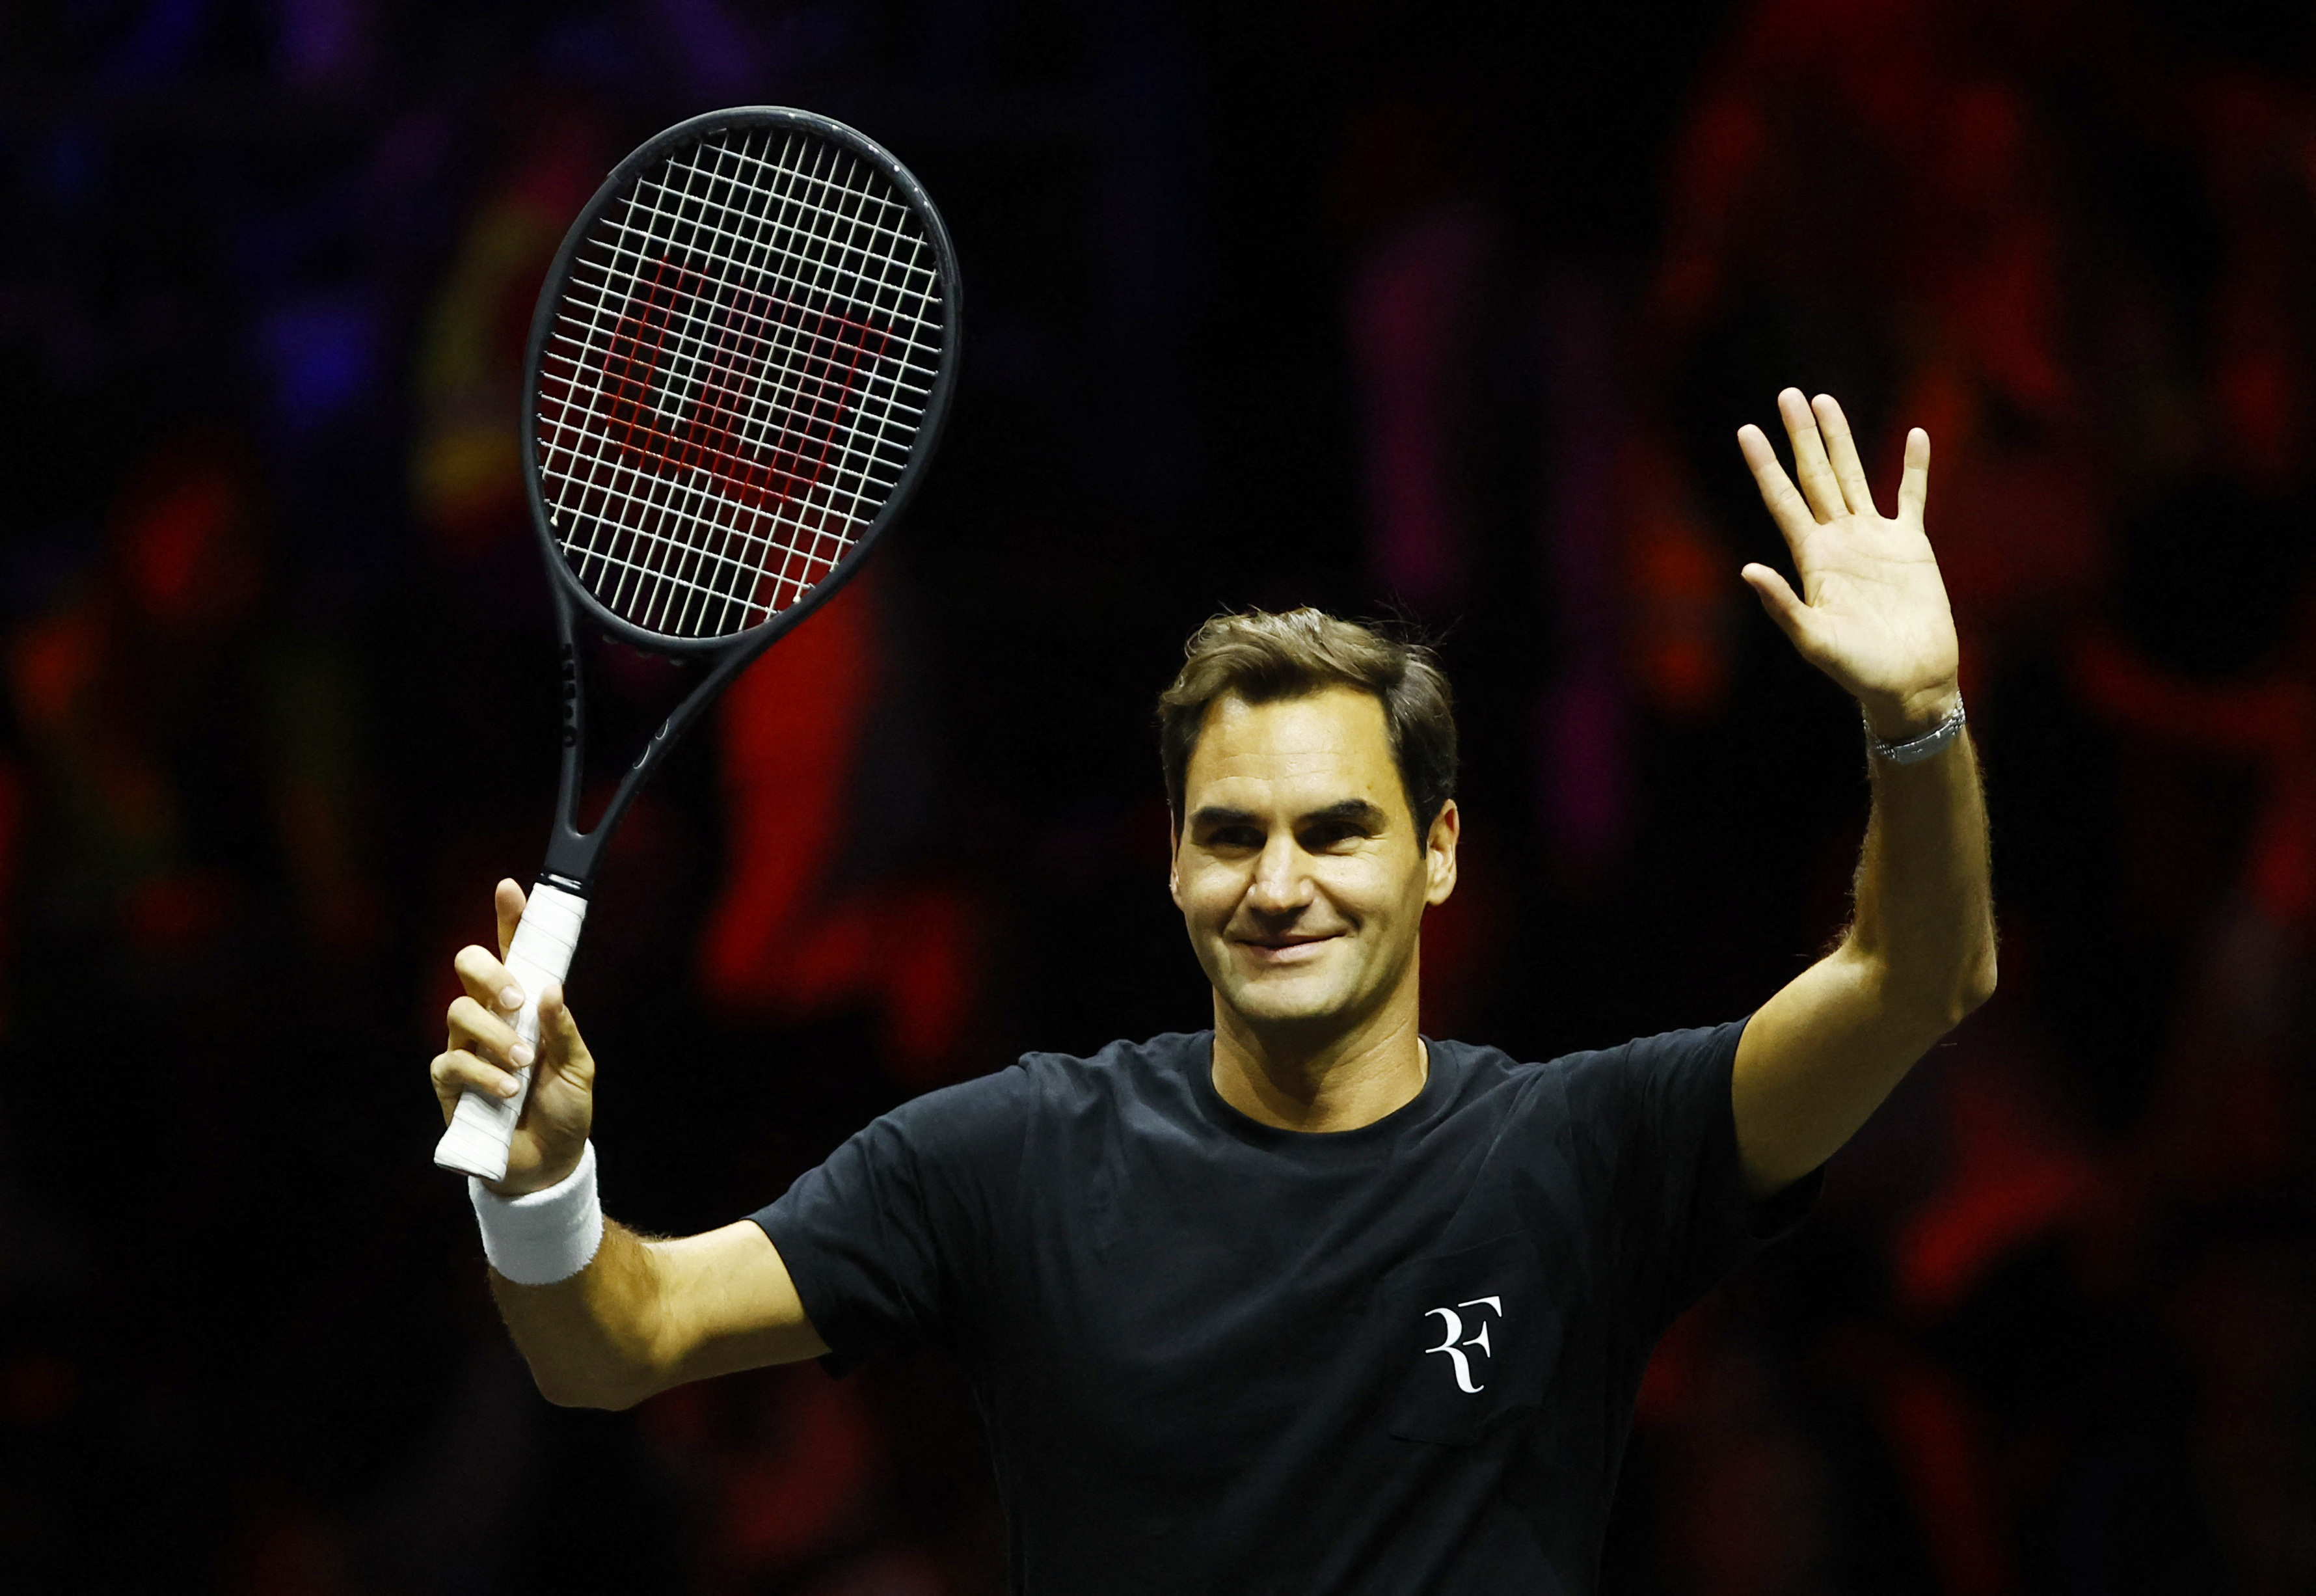  Roger Federer además de ser el mejor tenista de la historia colaboró con tareas humanitarias desde el comienzo de su carrera